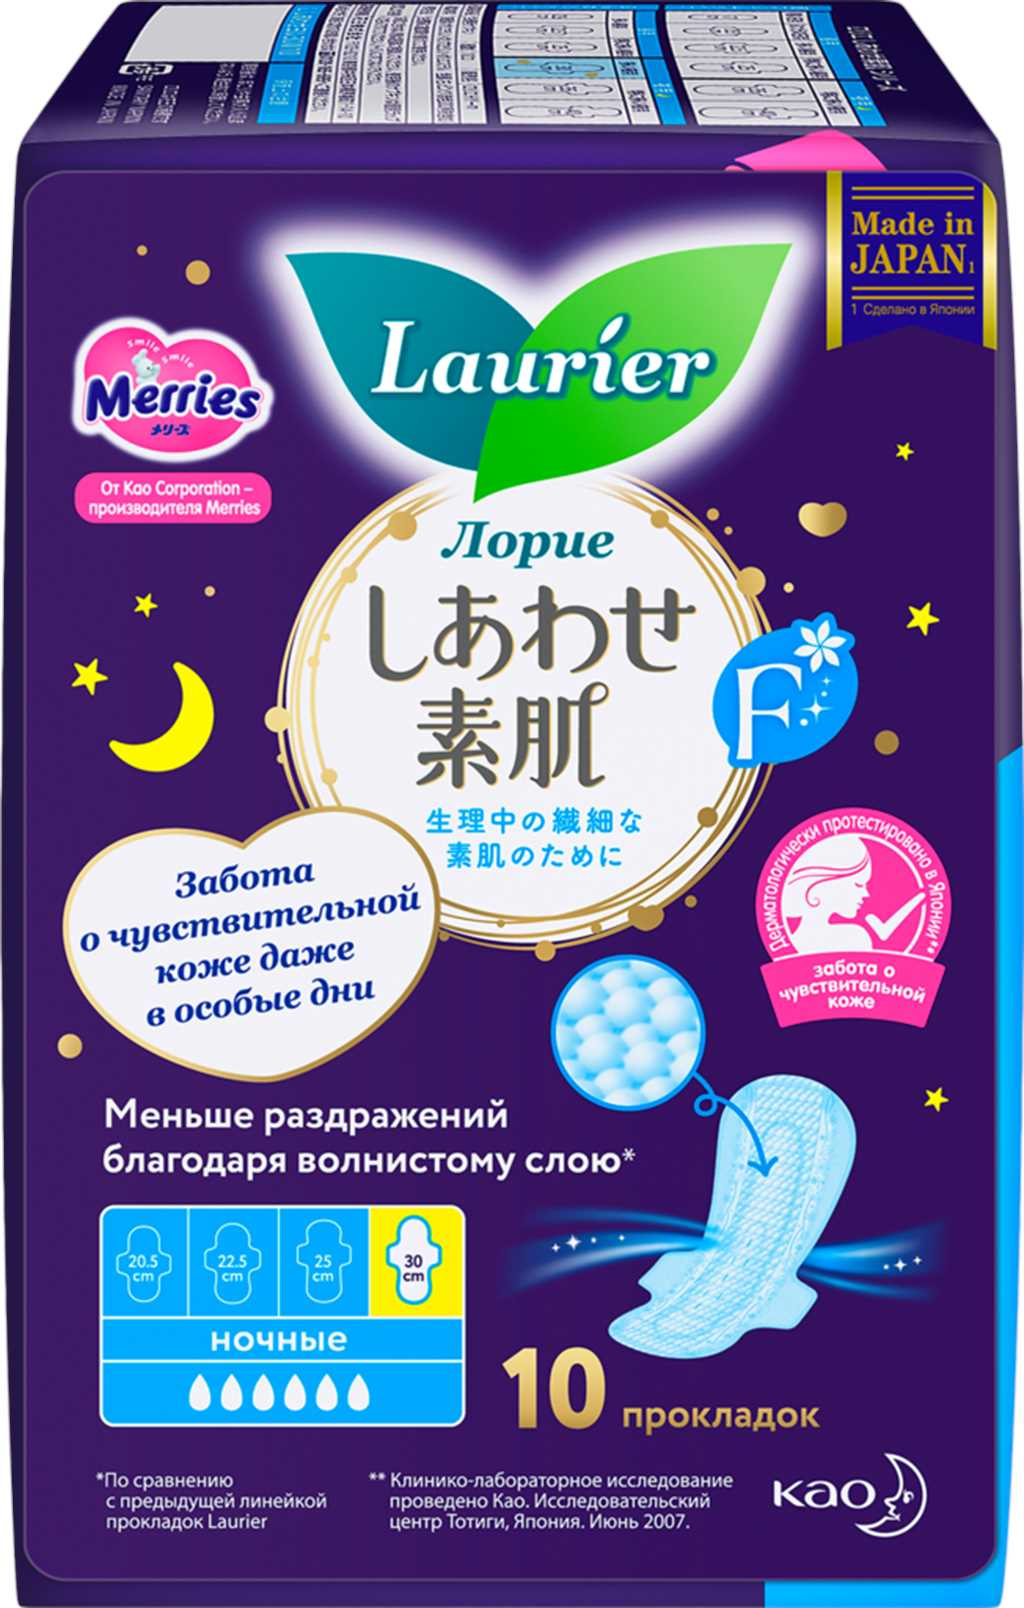 Laurier F гигиенические ночные прокладки N10 для обильных ночных выделений Лорие